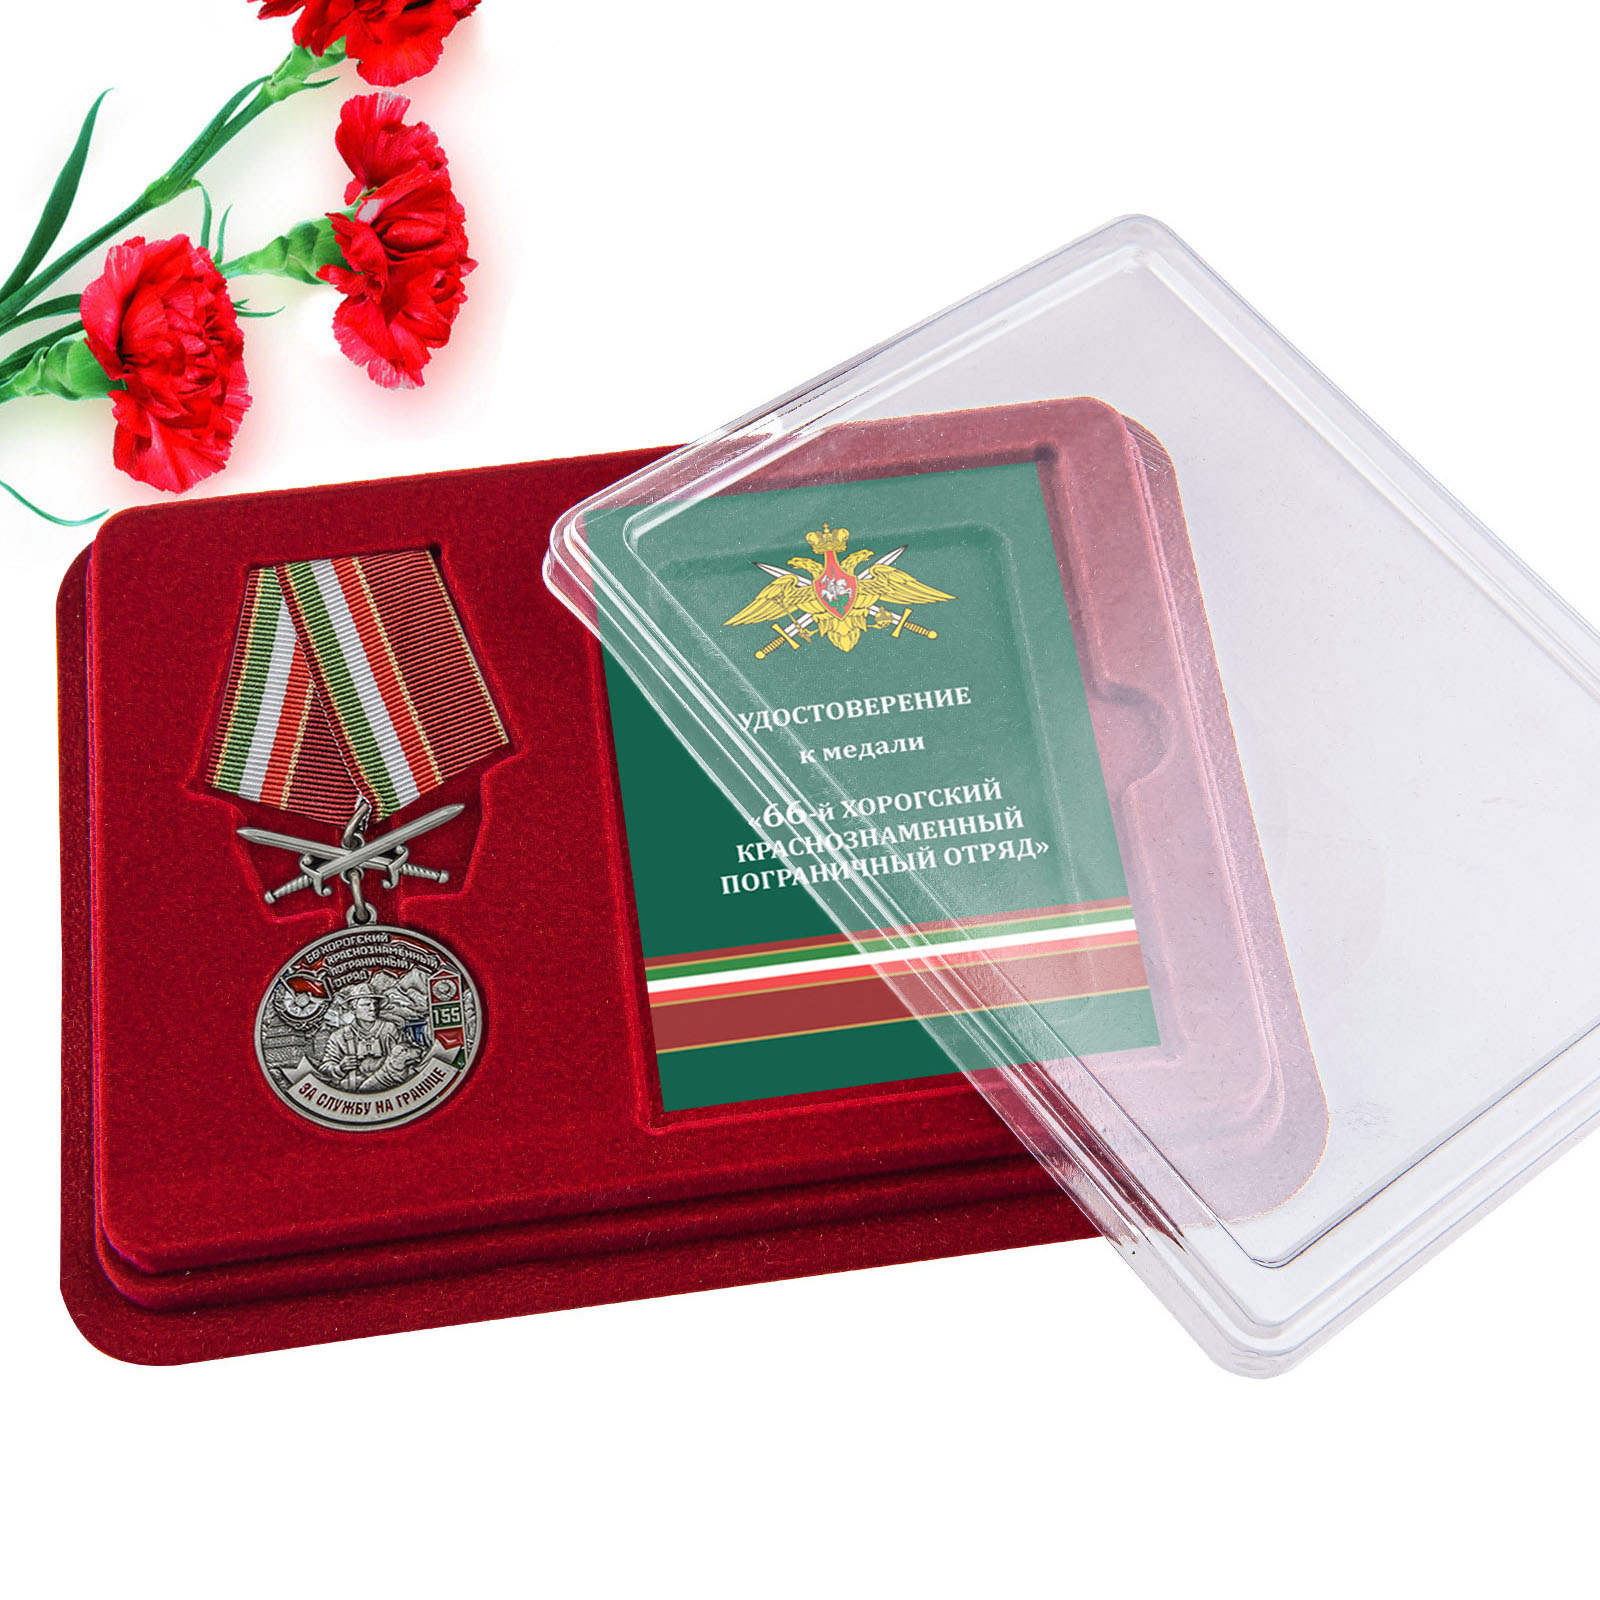 Купить медаль За службу в Хорогском пограничном отряде онлайн